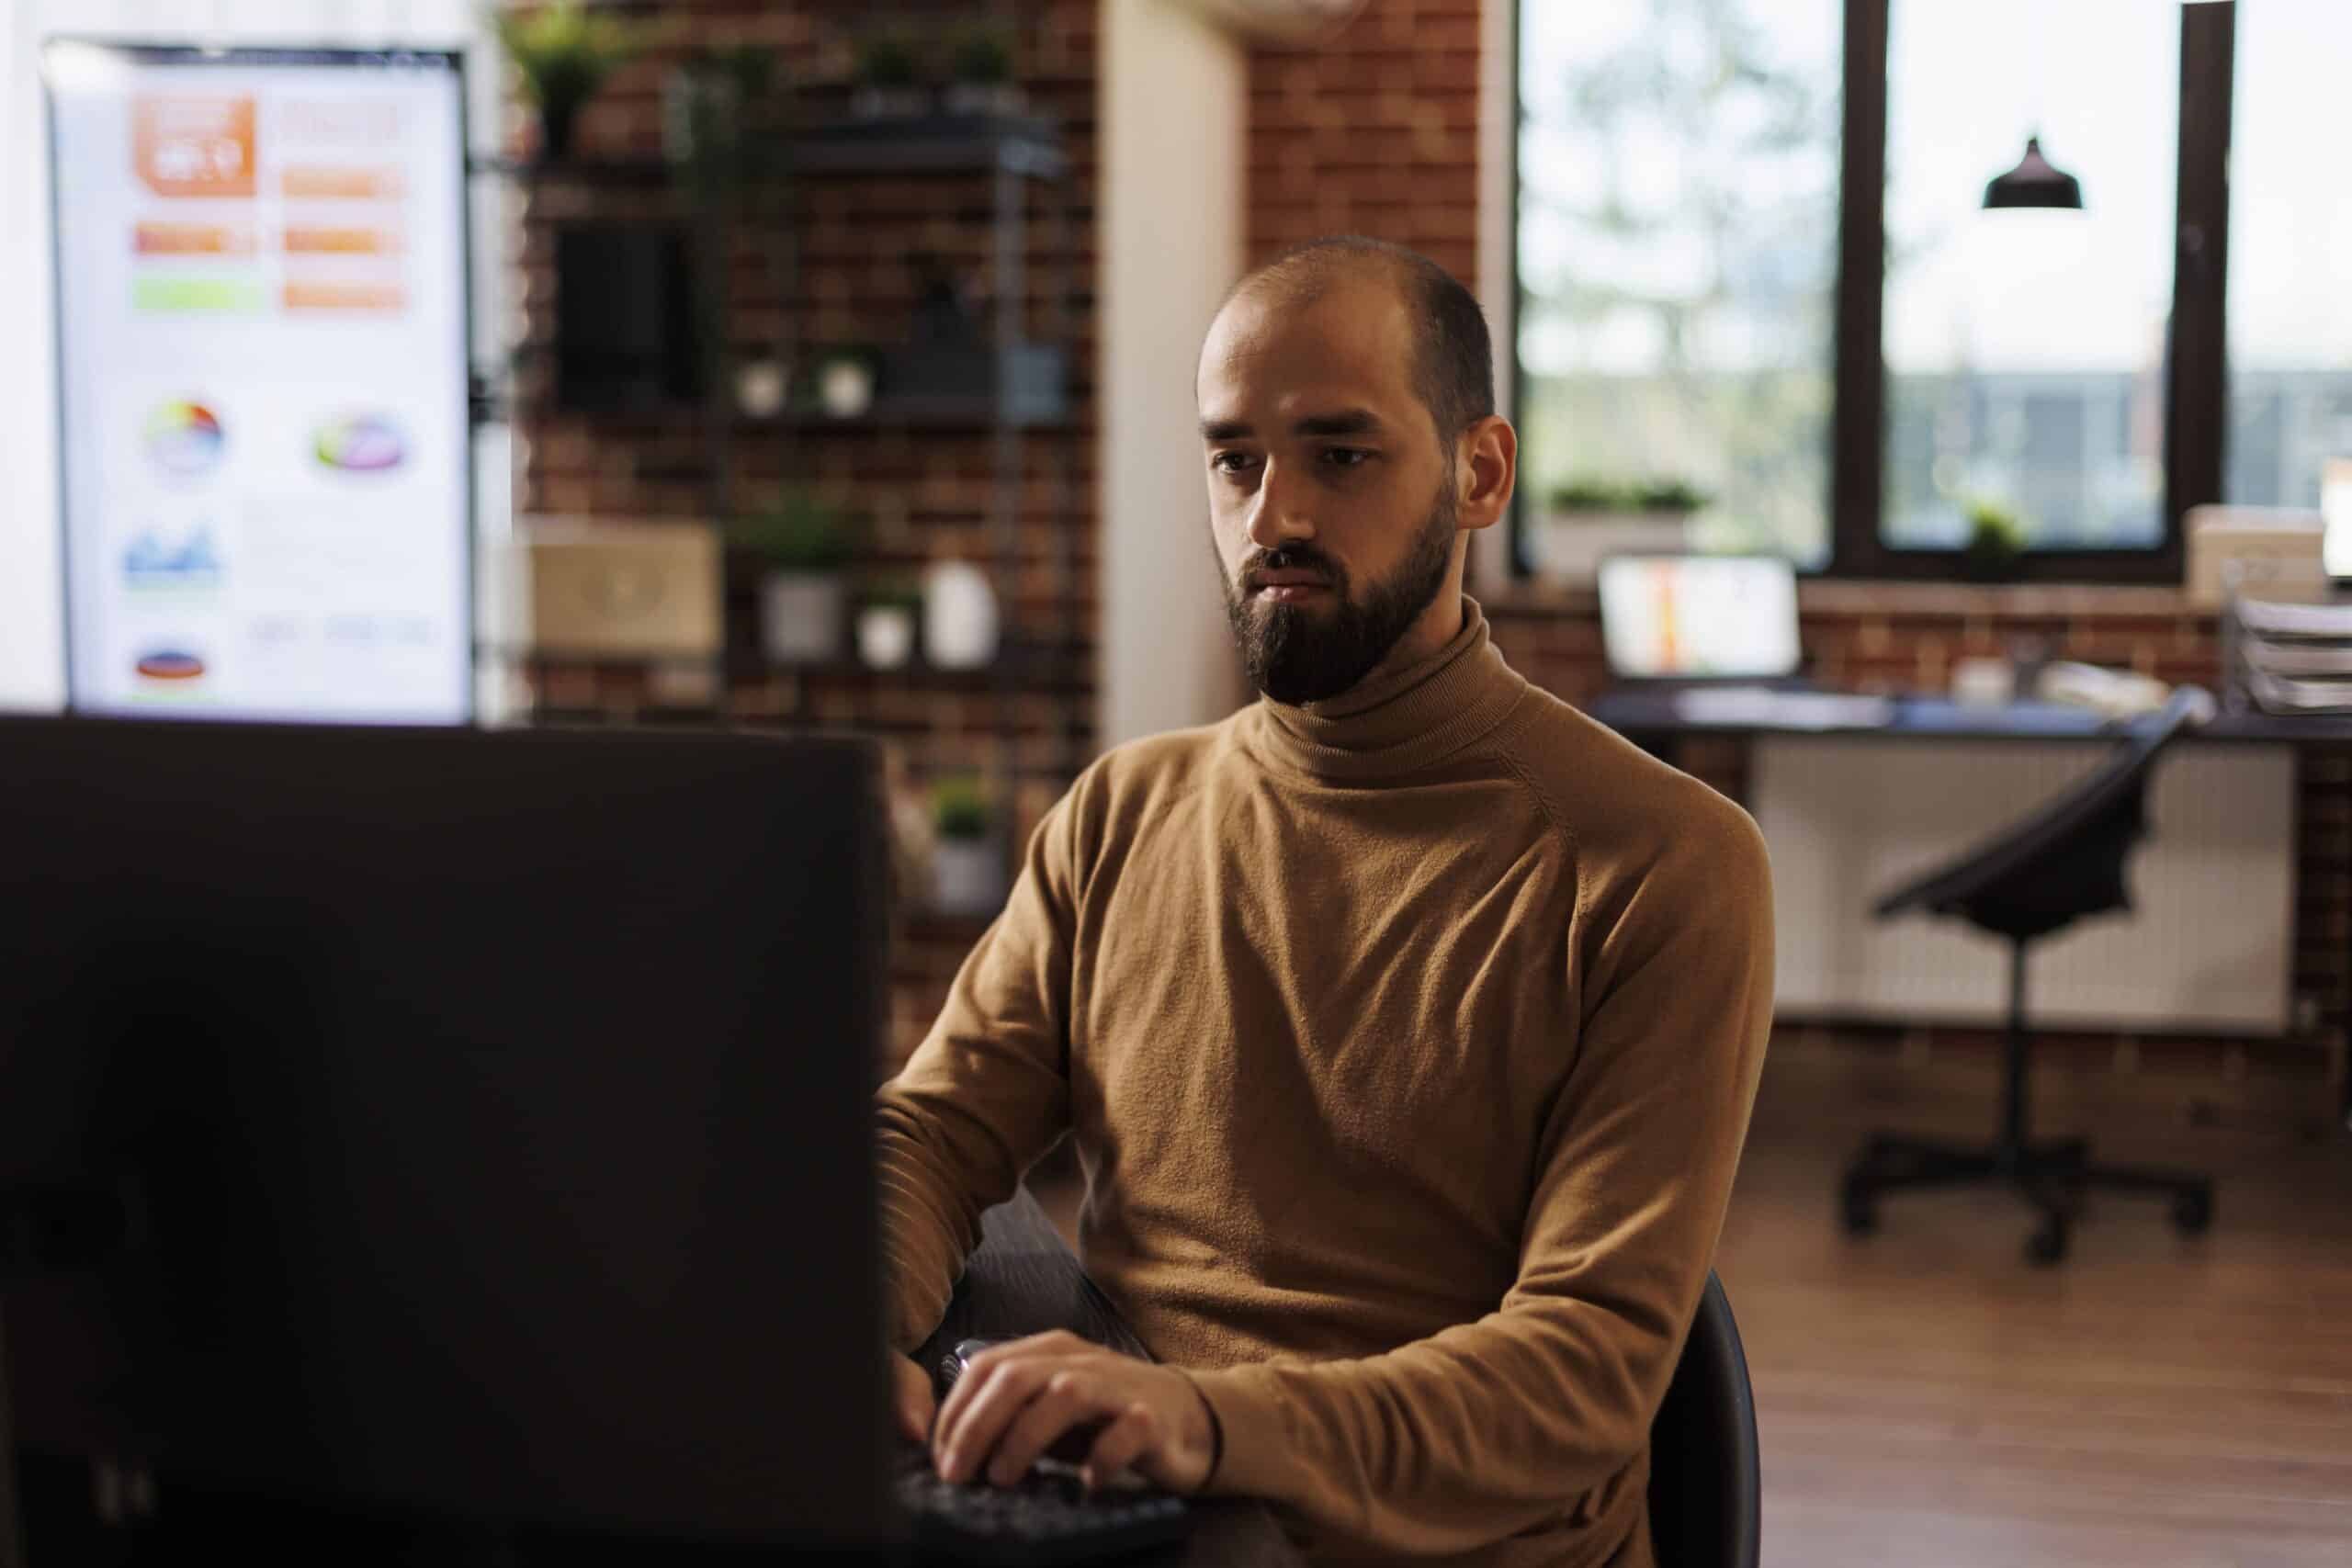 Homem vestido casualmente trabalhando no computador no seu ambiente home office.